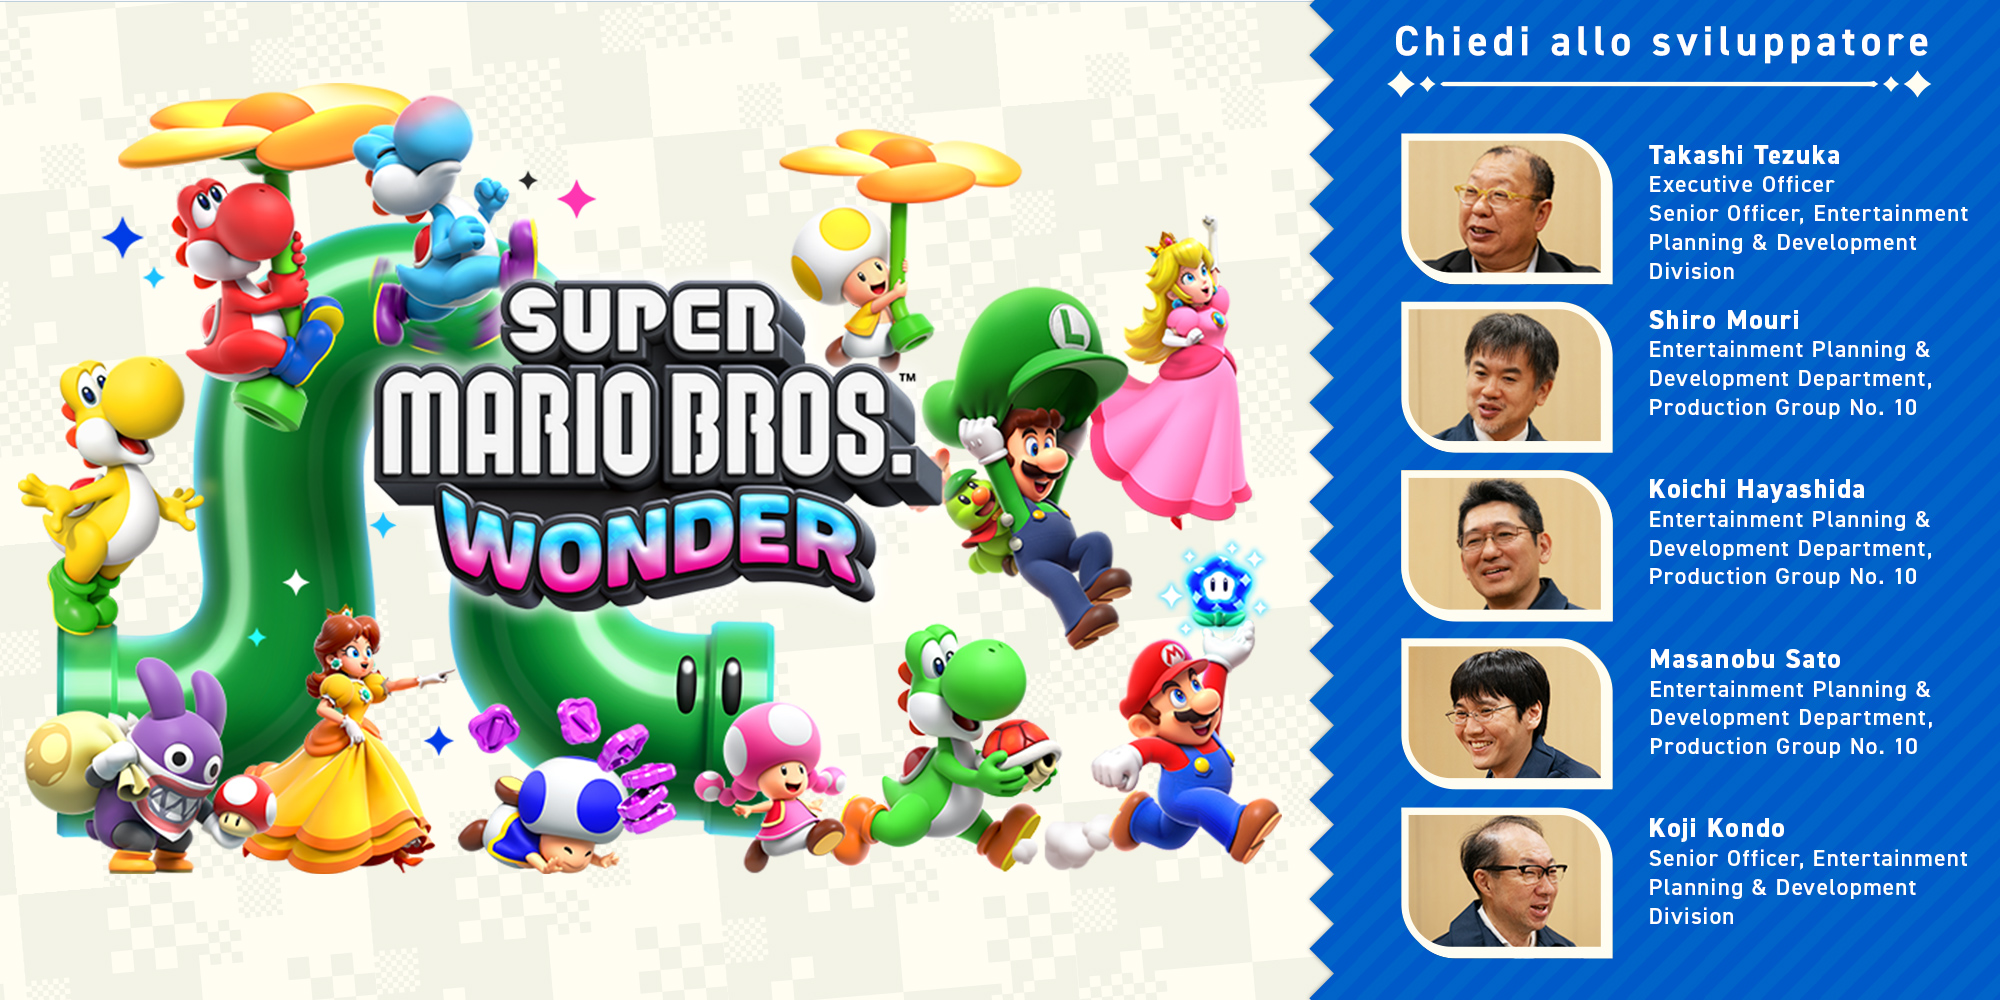 Chiedi allo sviluppatore, parte 11: Super Mario Bros. Wonder – Capitolo 3